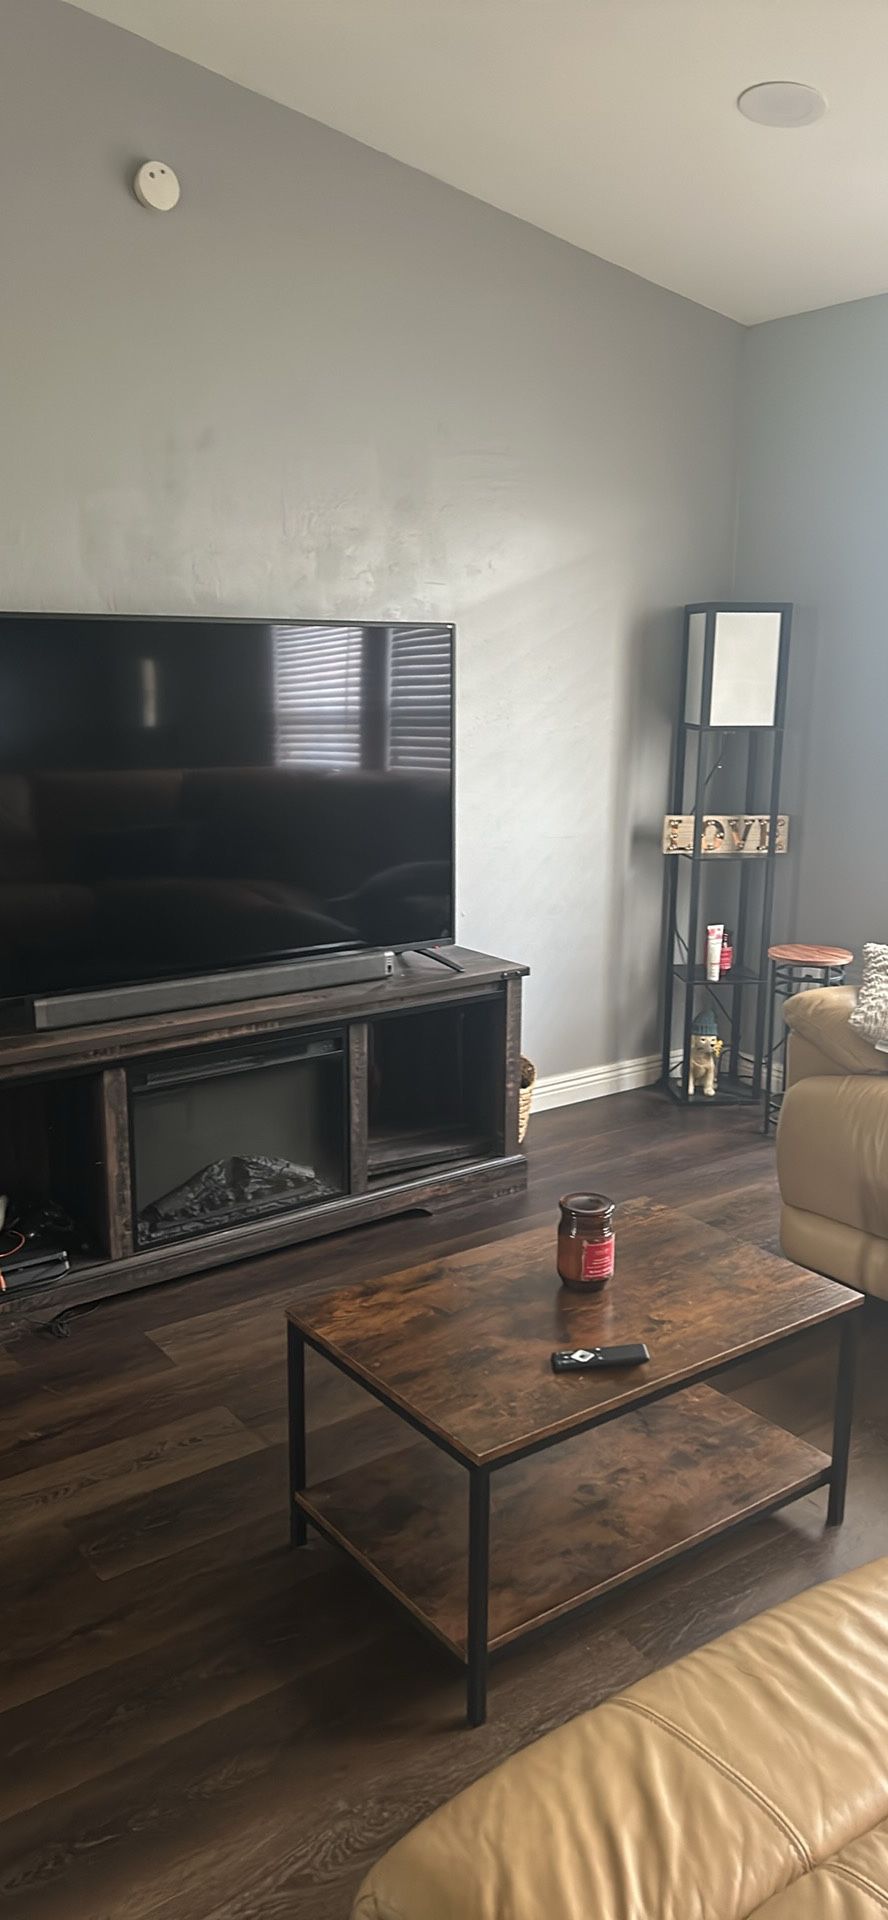 Living Room Set For Sale